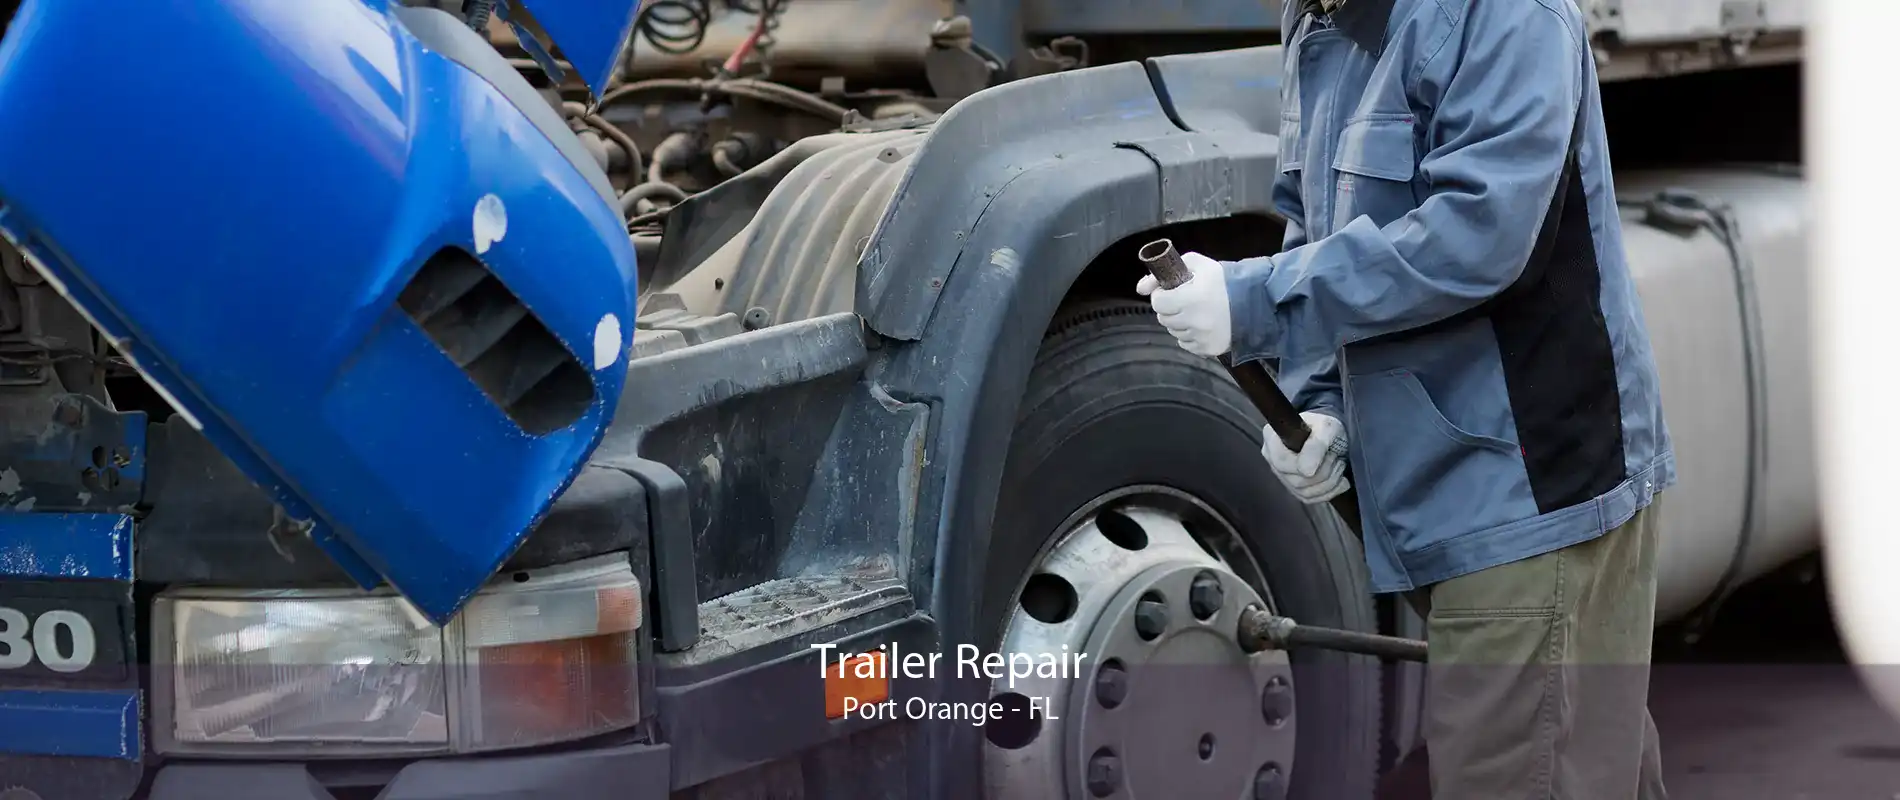 Trailer Repair Port Orange - FL